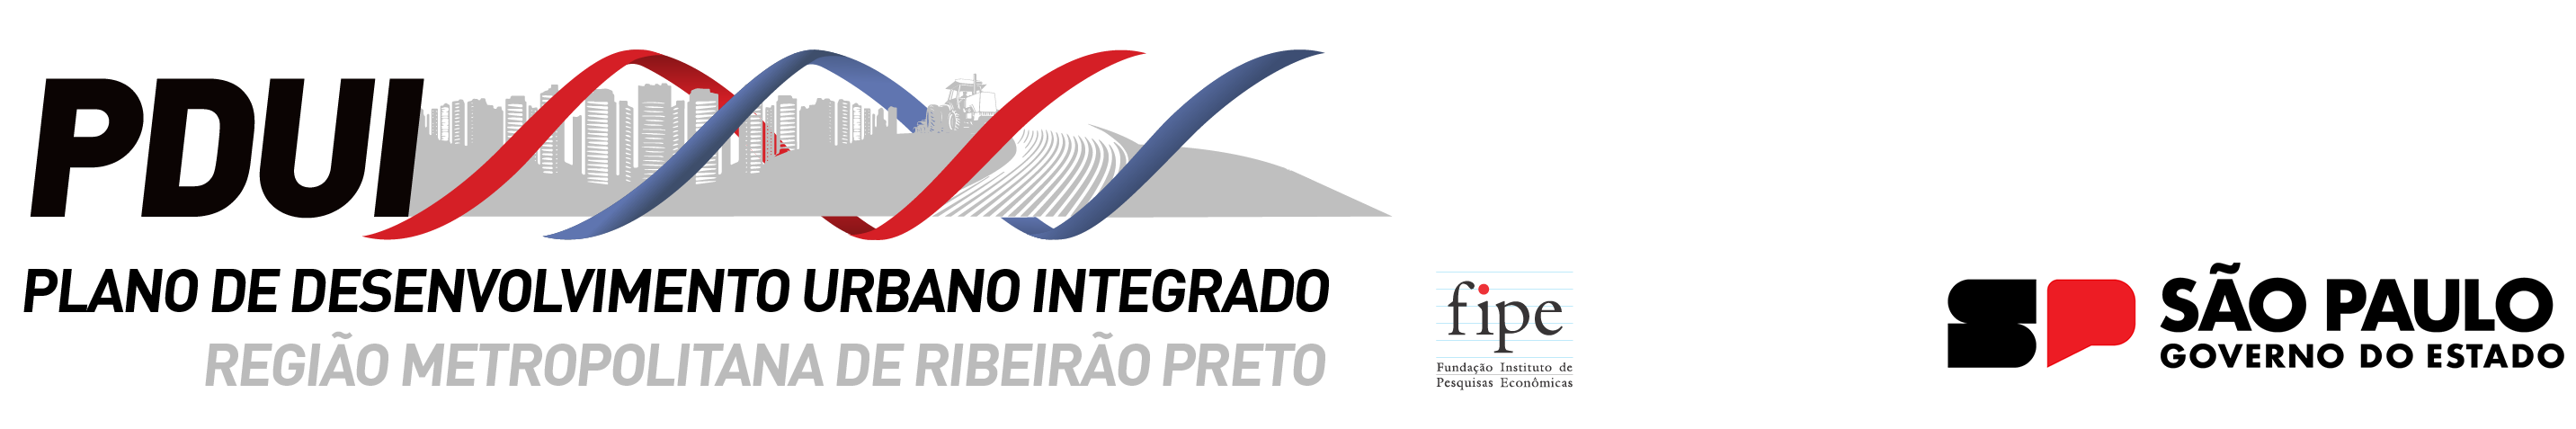 PDUI-RMRP (Região Metropolitana de Ribeirão Preto)